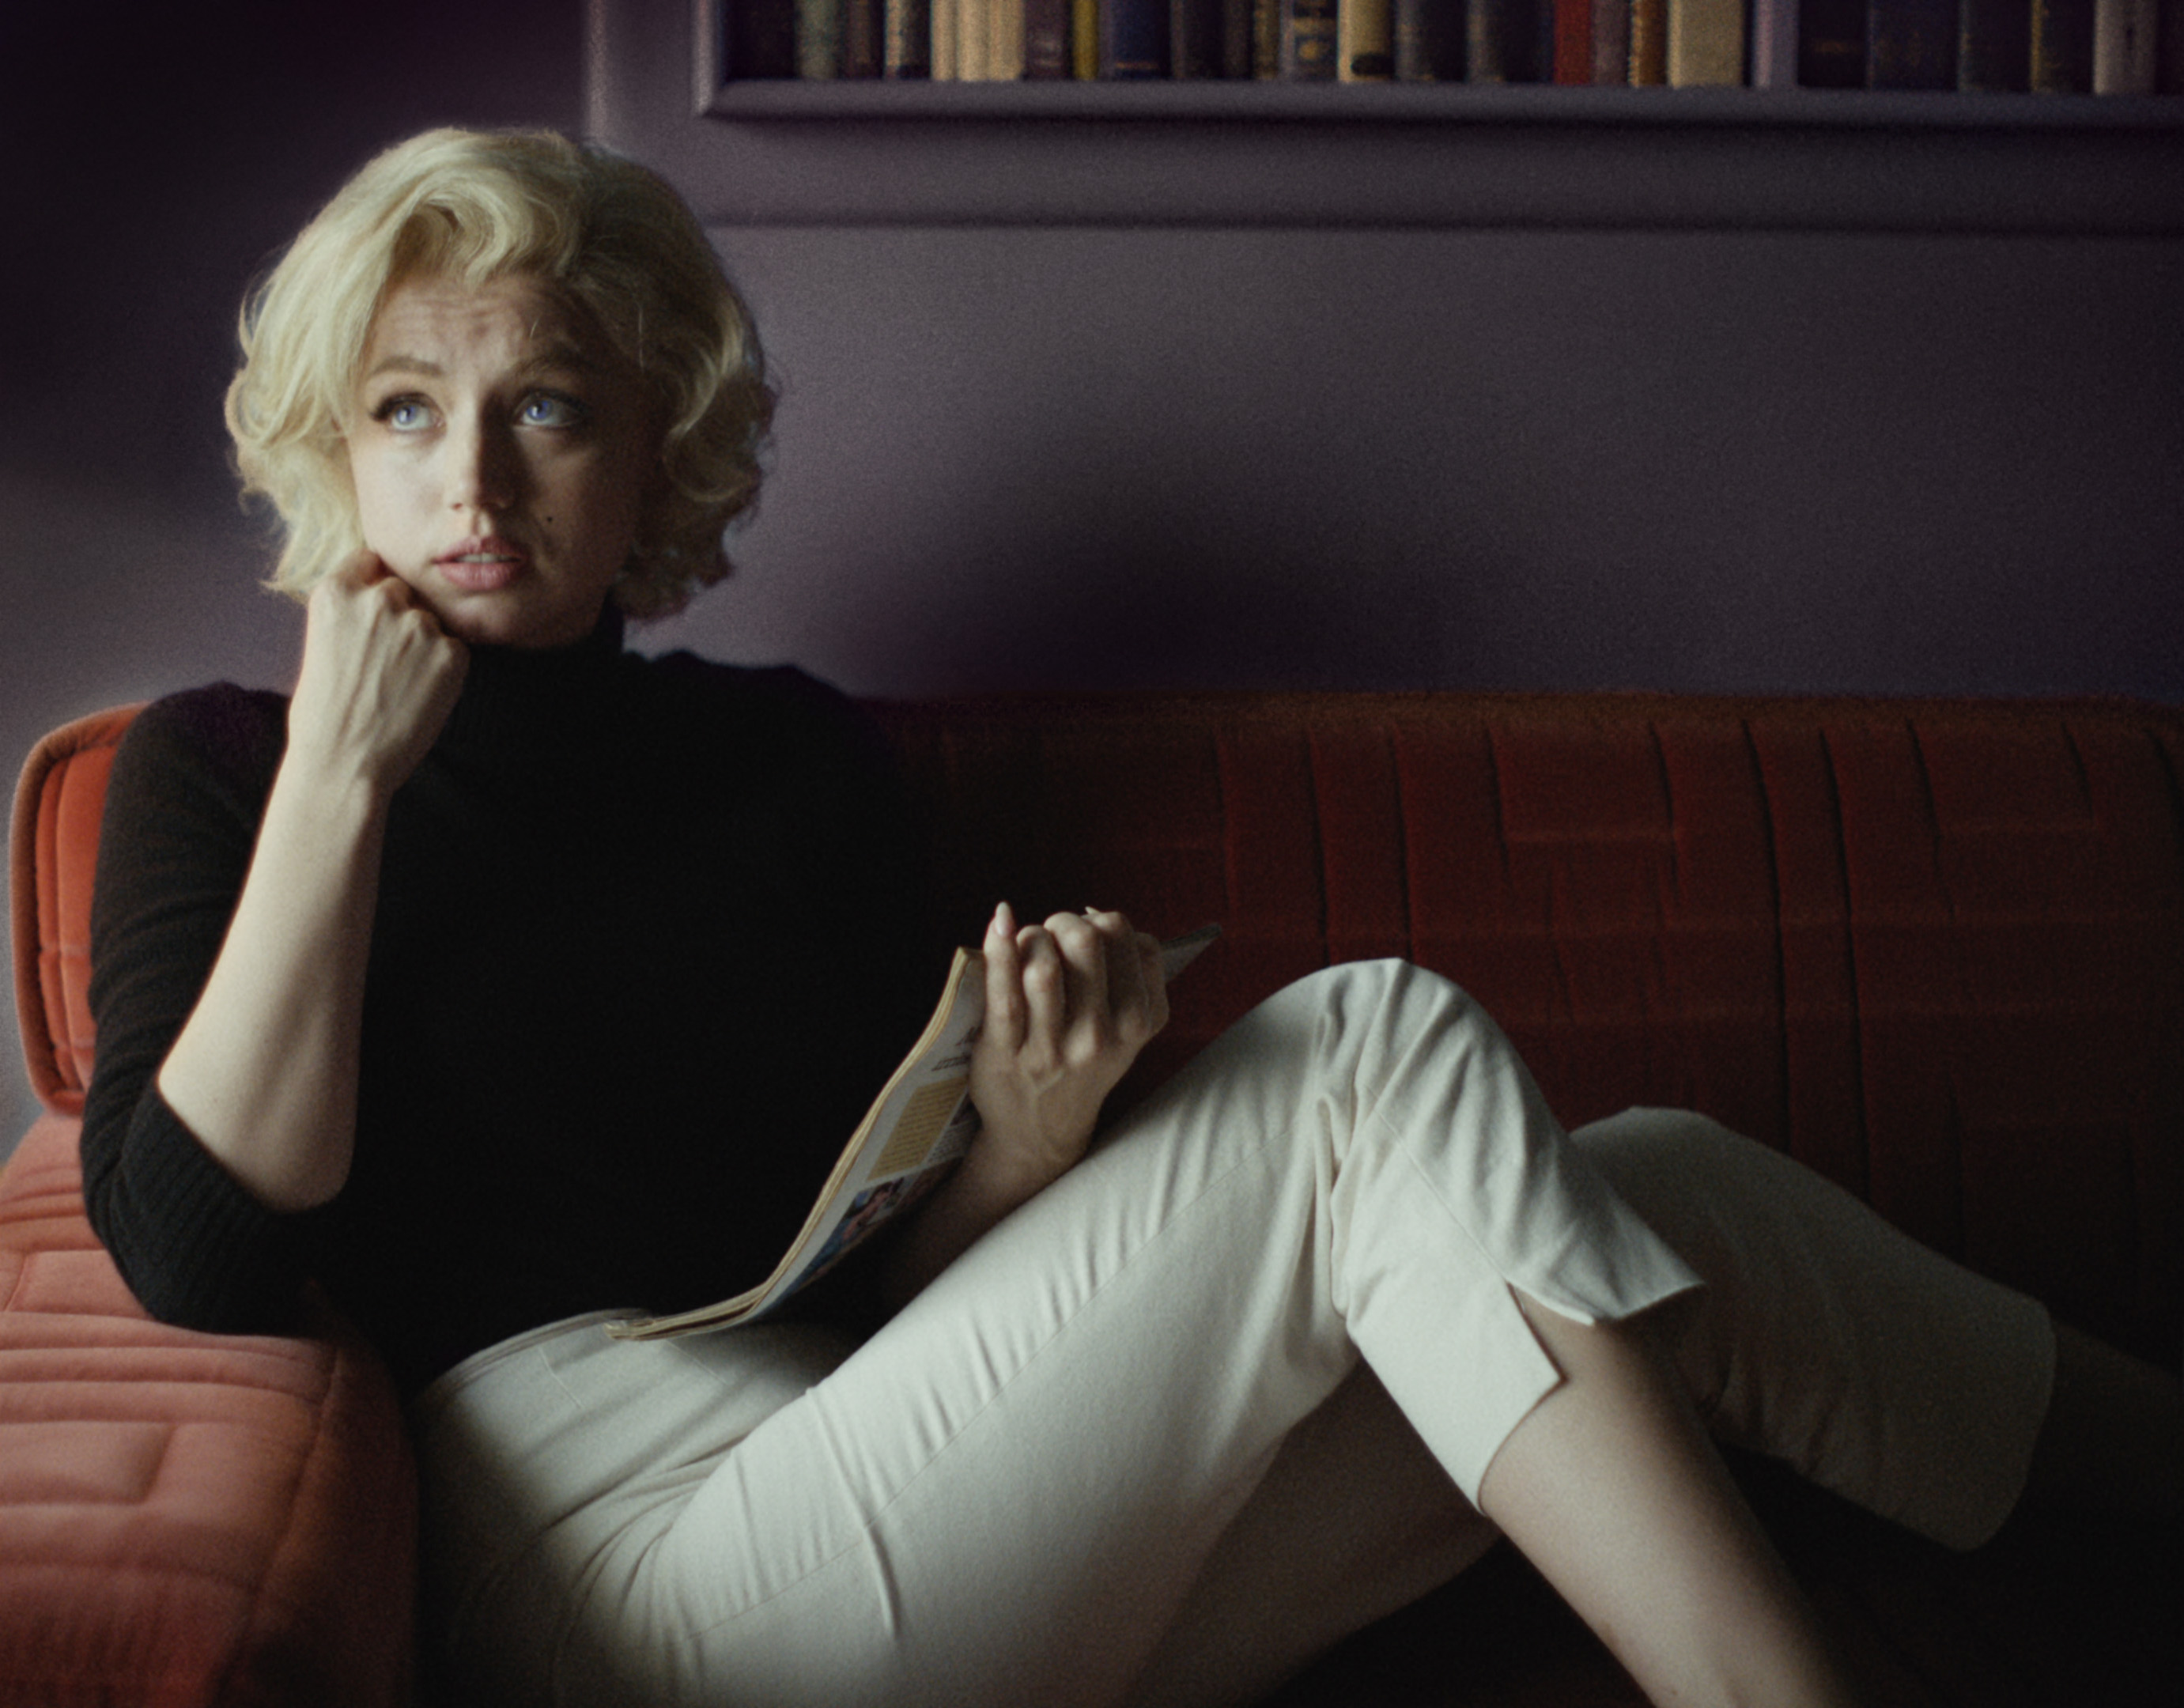 Blonde Cast on Netflix - Ana de Armas as Norma Jeane aka Marilyn Monroe